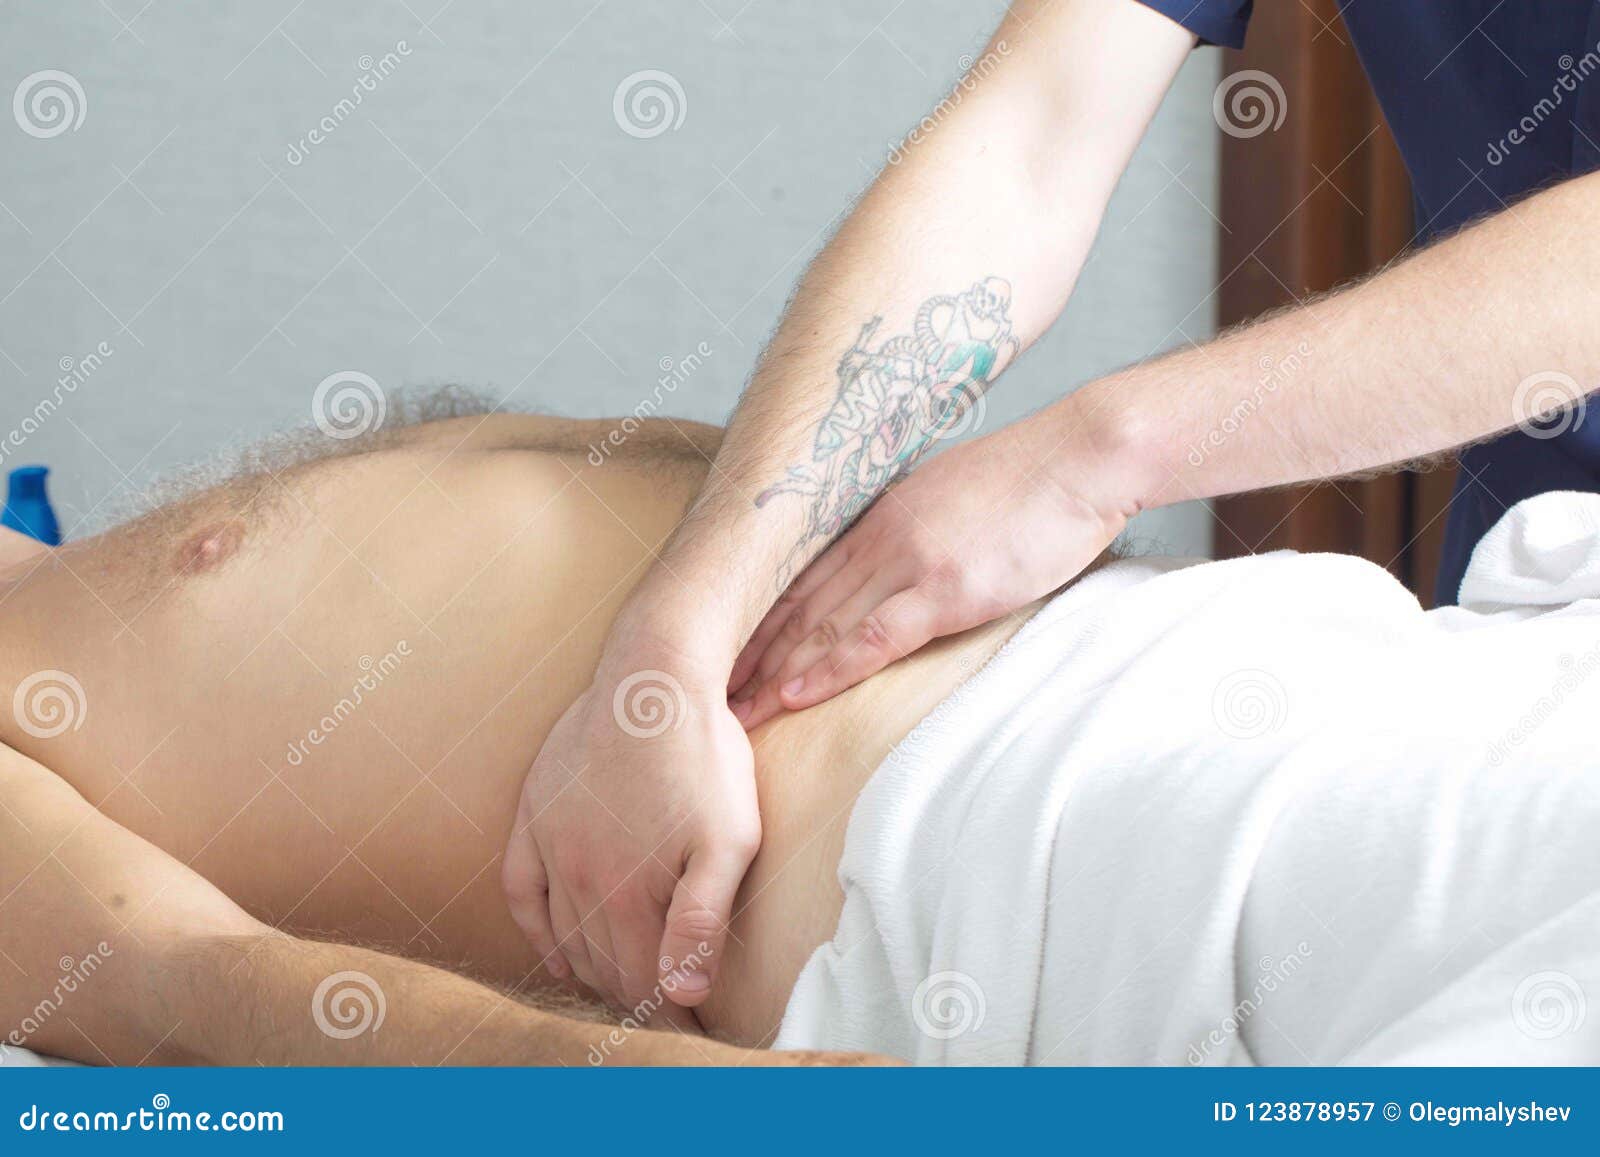 Massage Therapist Makes A Man A Massage Stock Image